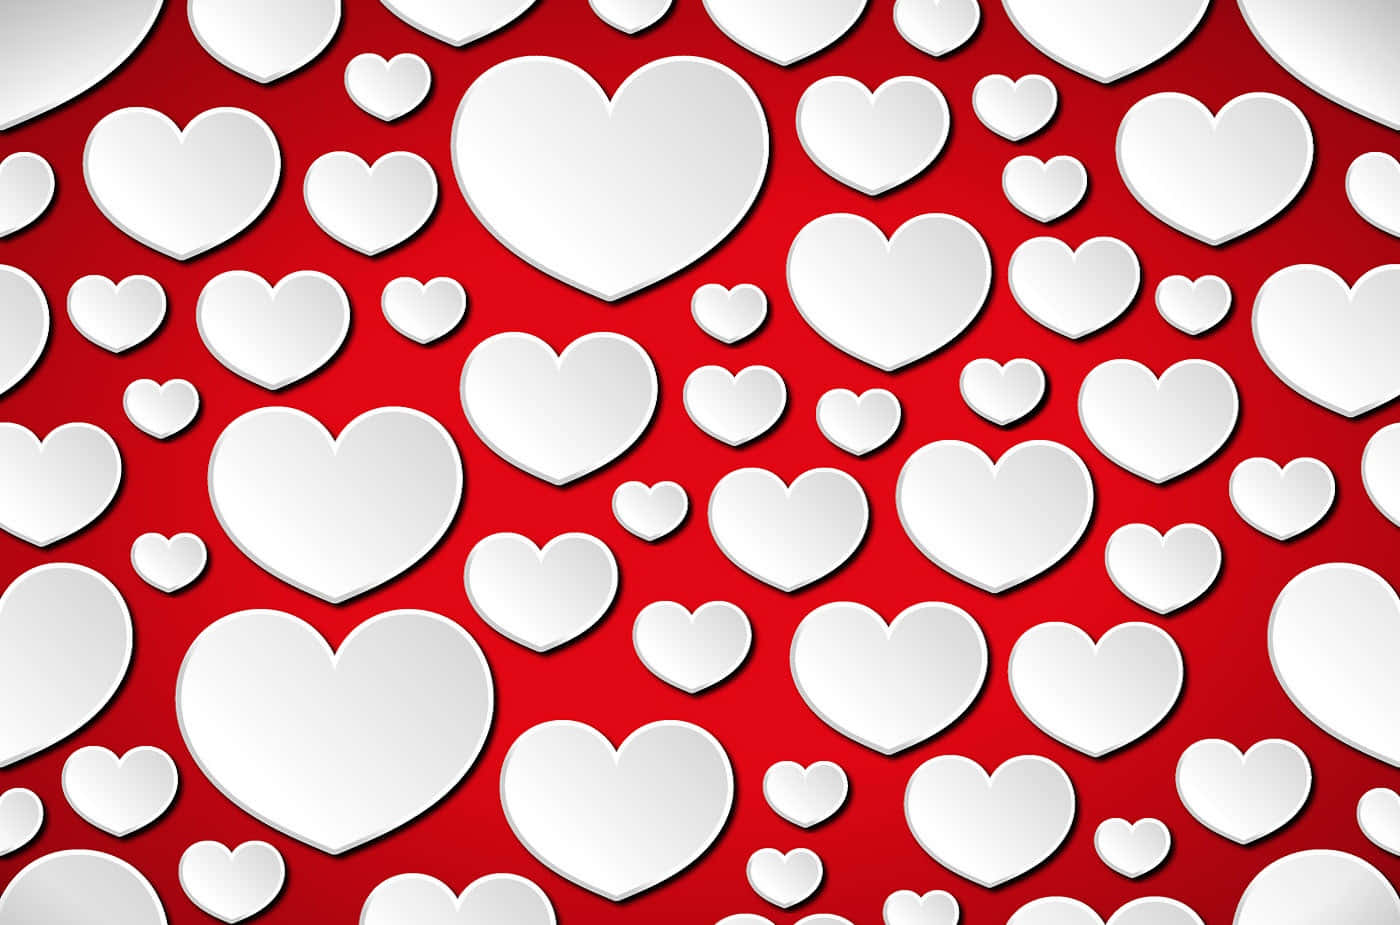 #Love in Red: Beautiful Heart Pattern Wallpaper Wallpaper